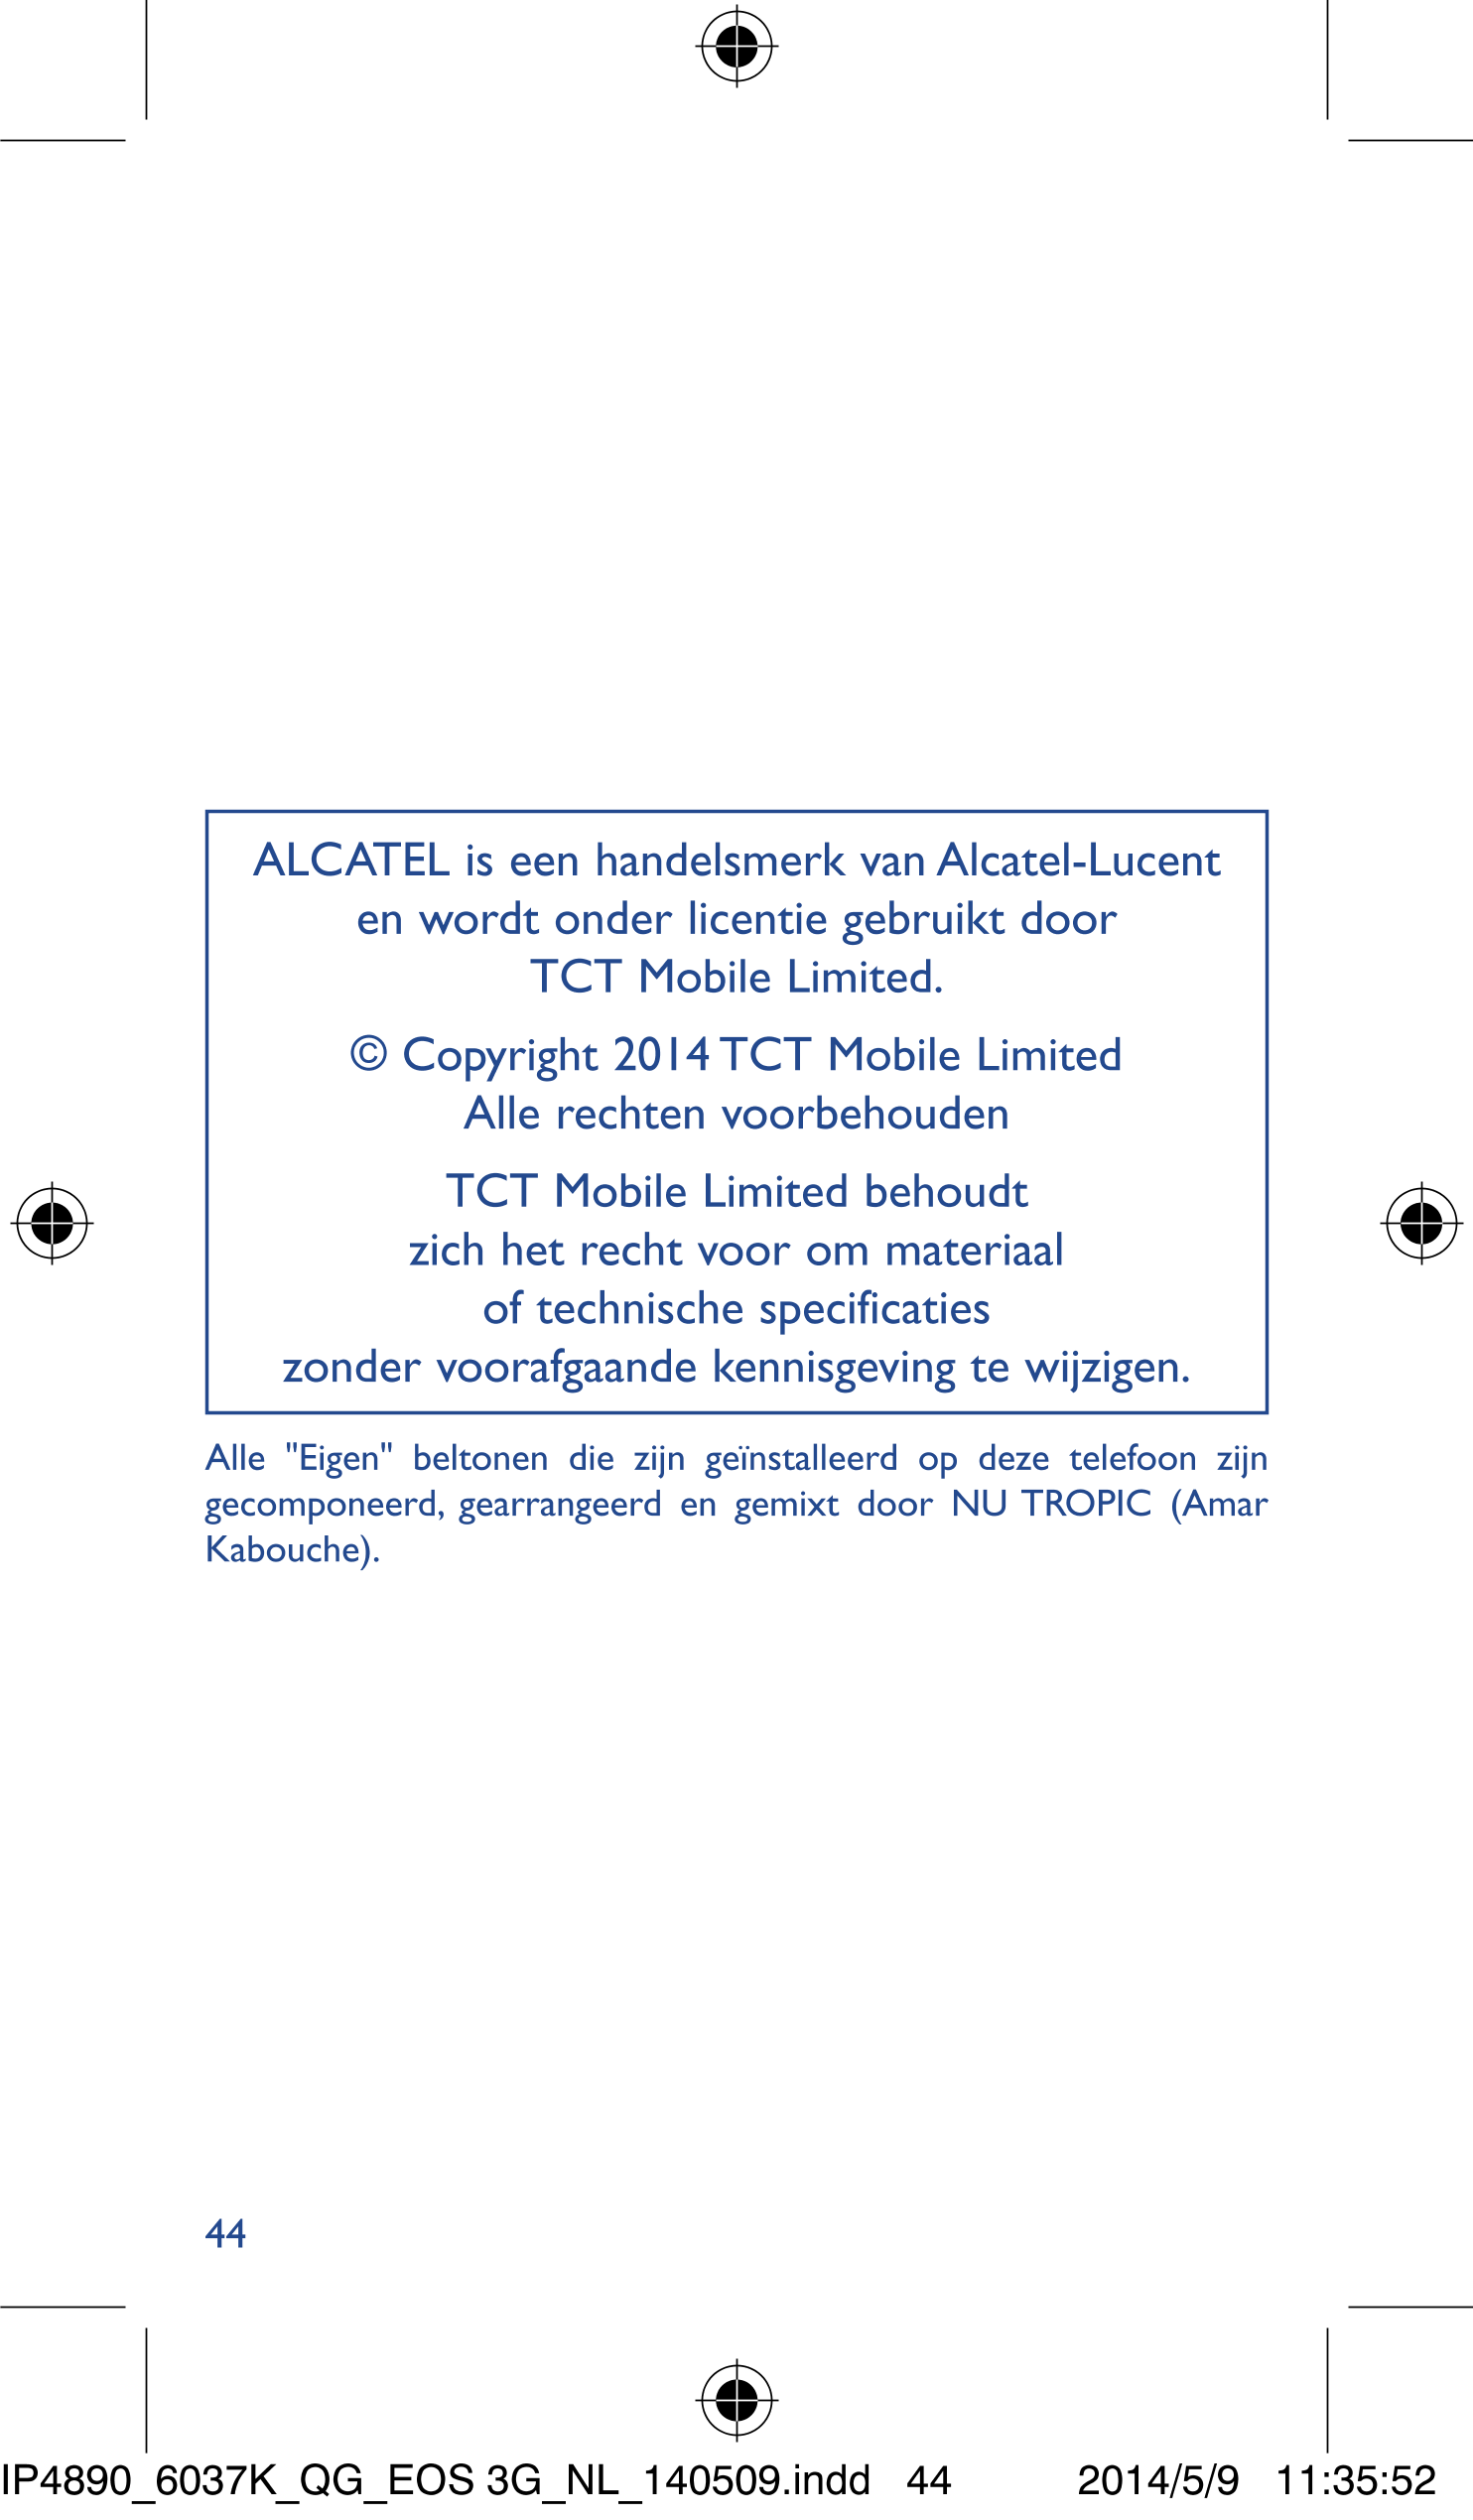 ALCATEL is een handelsmerk van Alcatel-Lucent 
en wordt onder licentie gebruikt door 
TCT Mobile Limited.
© Copyright 2014 TCT M